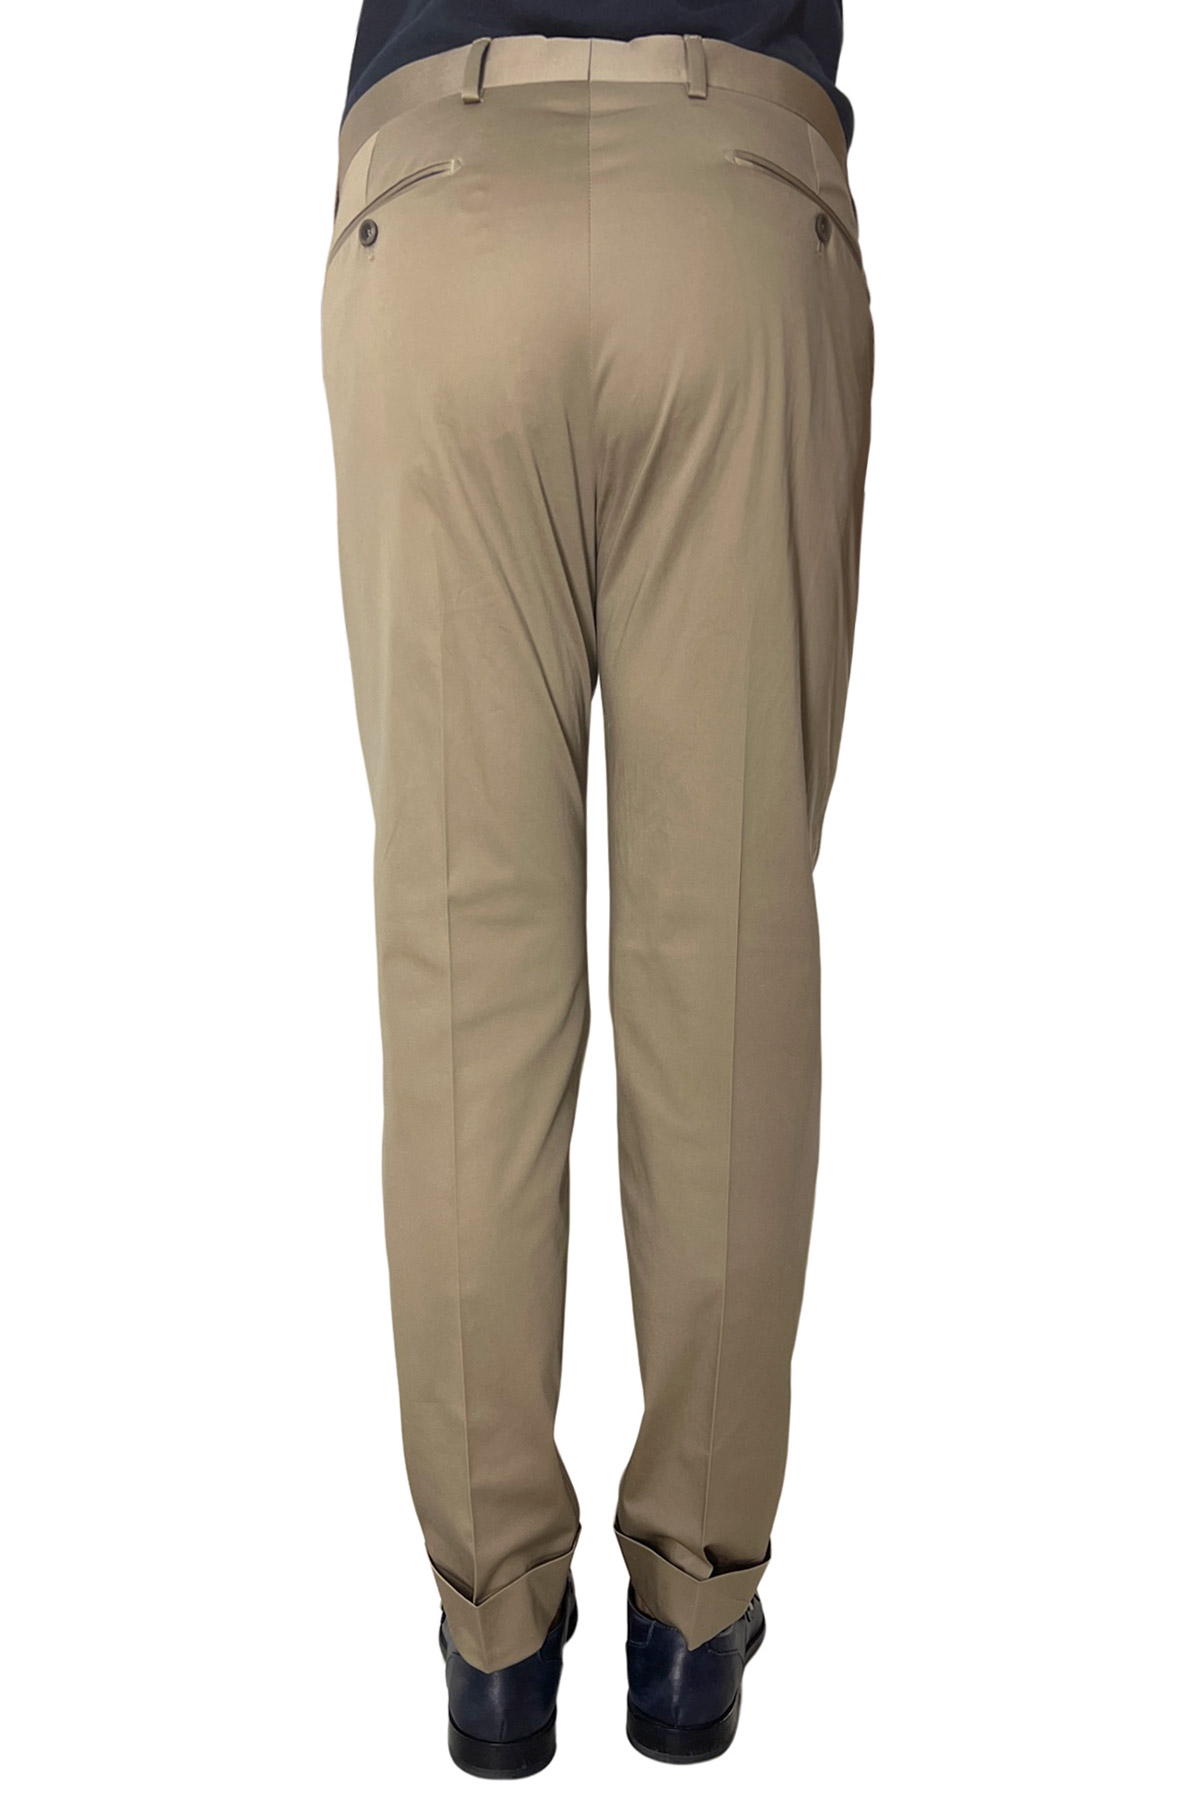 Pantalone uomo Fango di cotone leggermente elastico tasca america con una pinces e risvolto 4cm